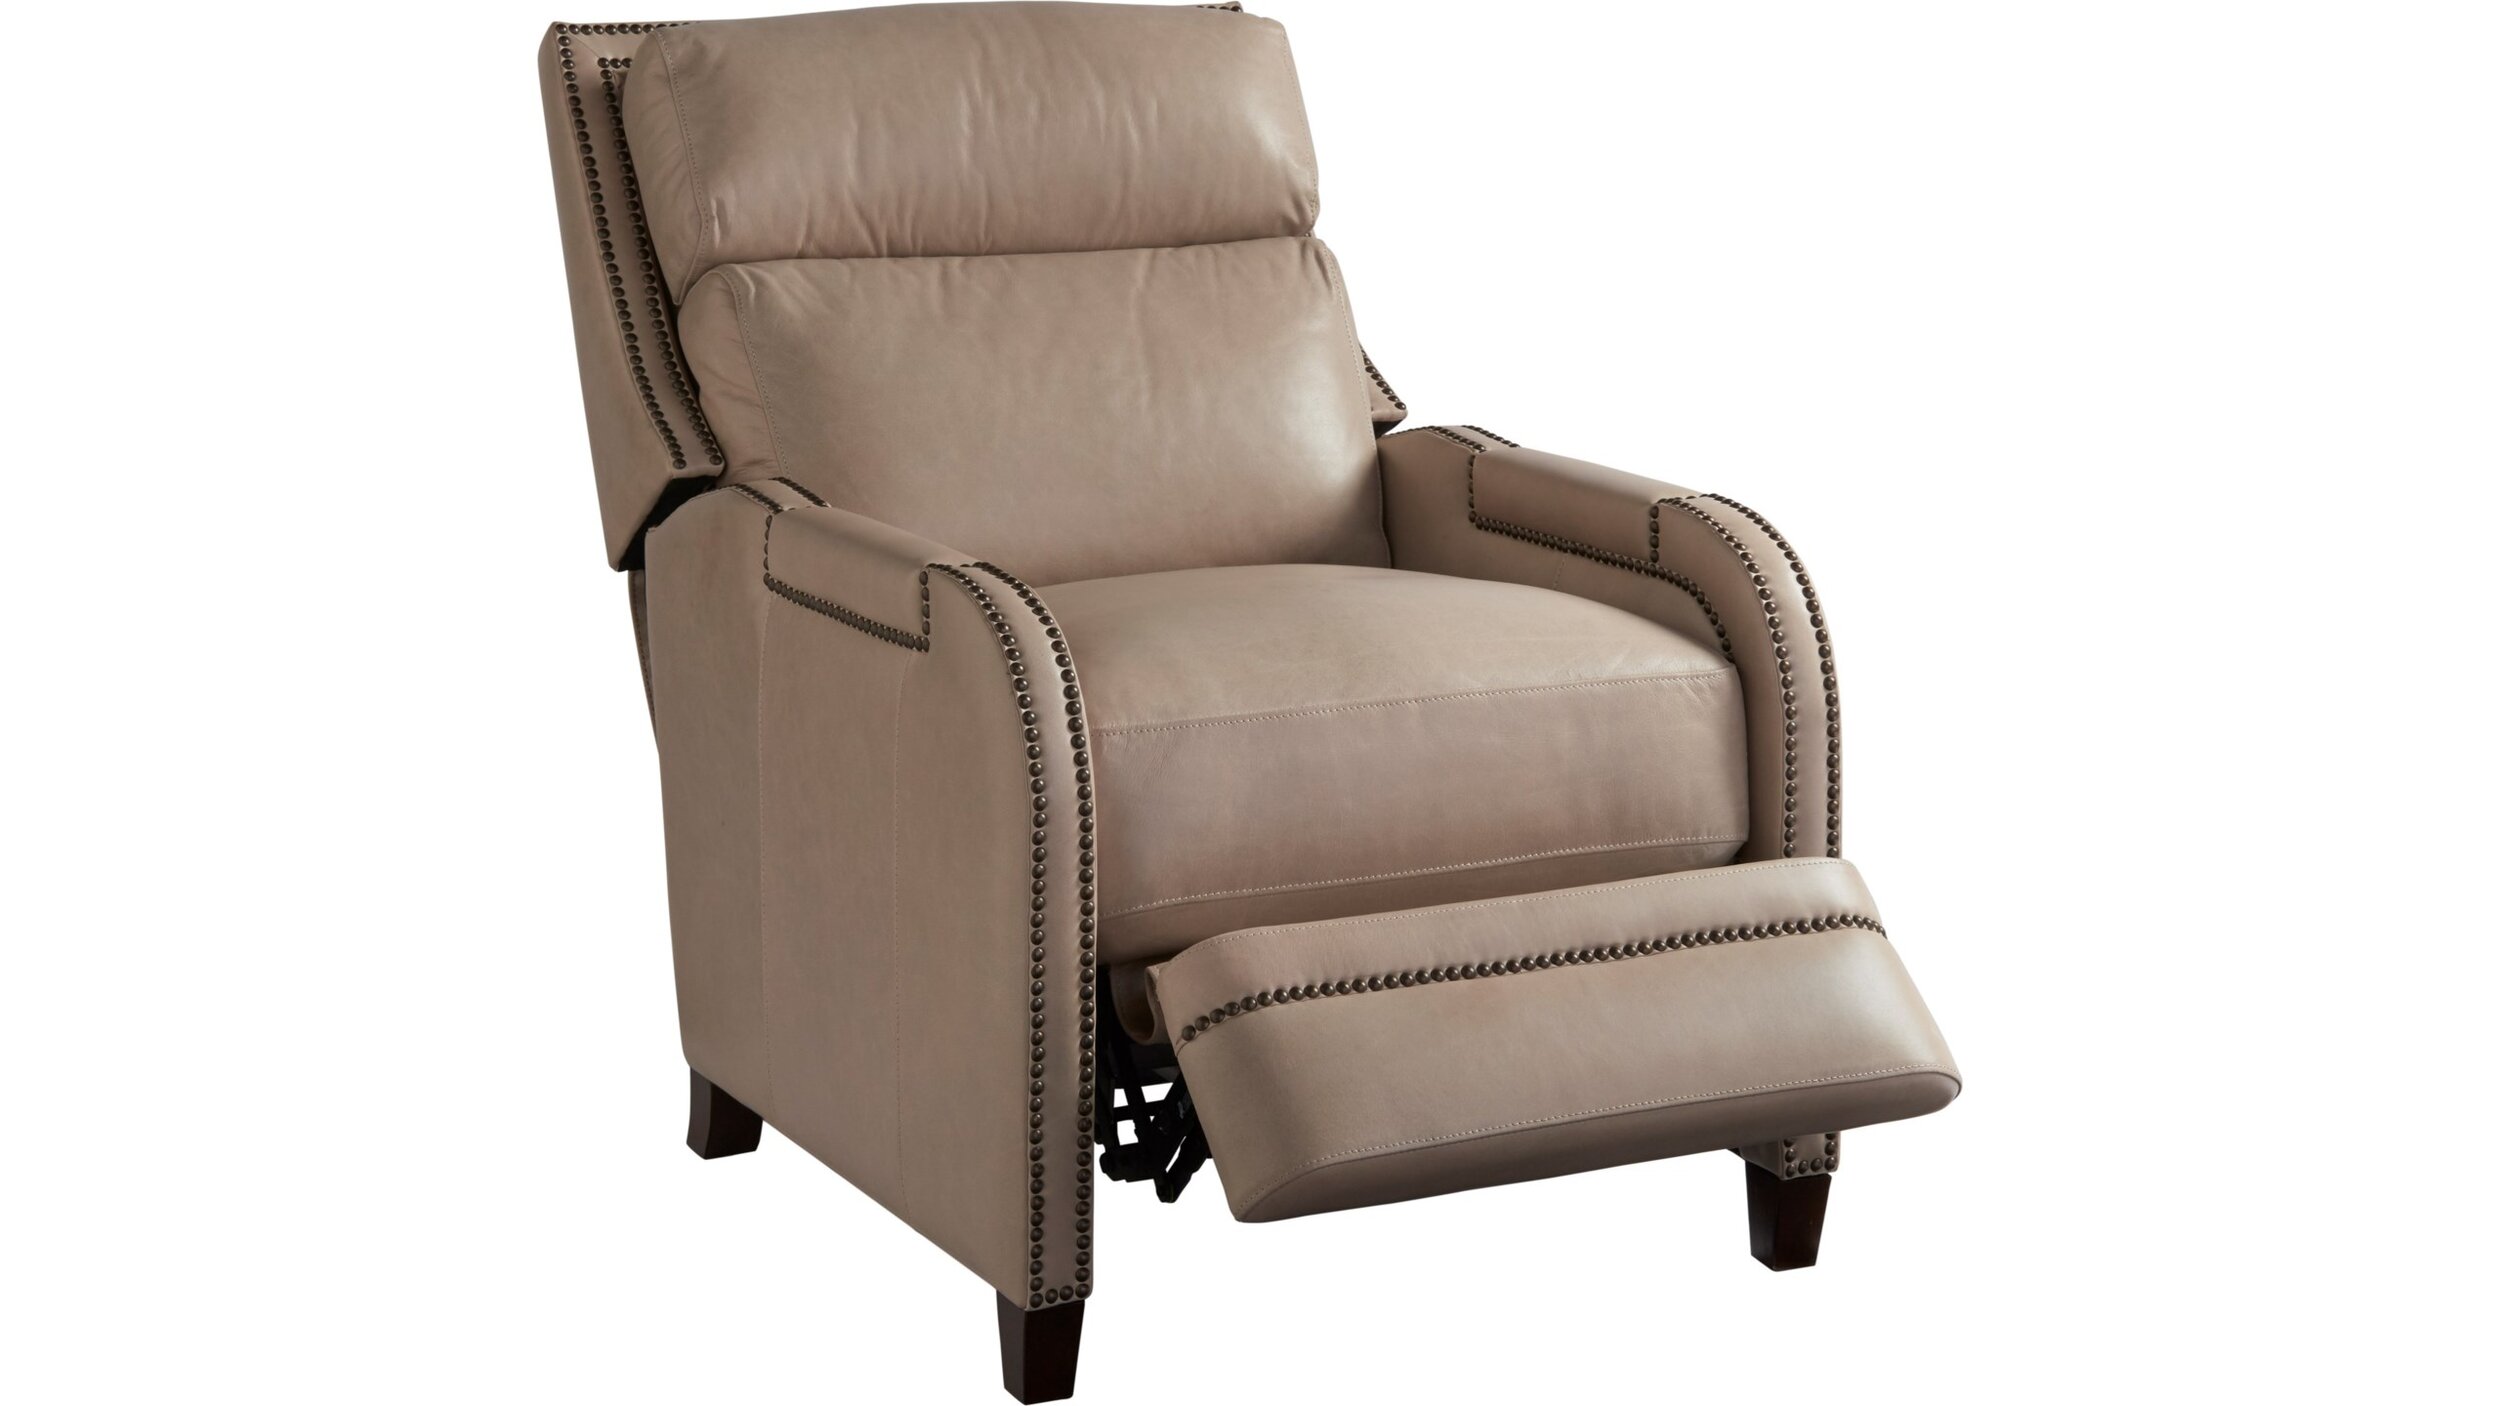 montana-recliner-belfort-furniture.jpg